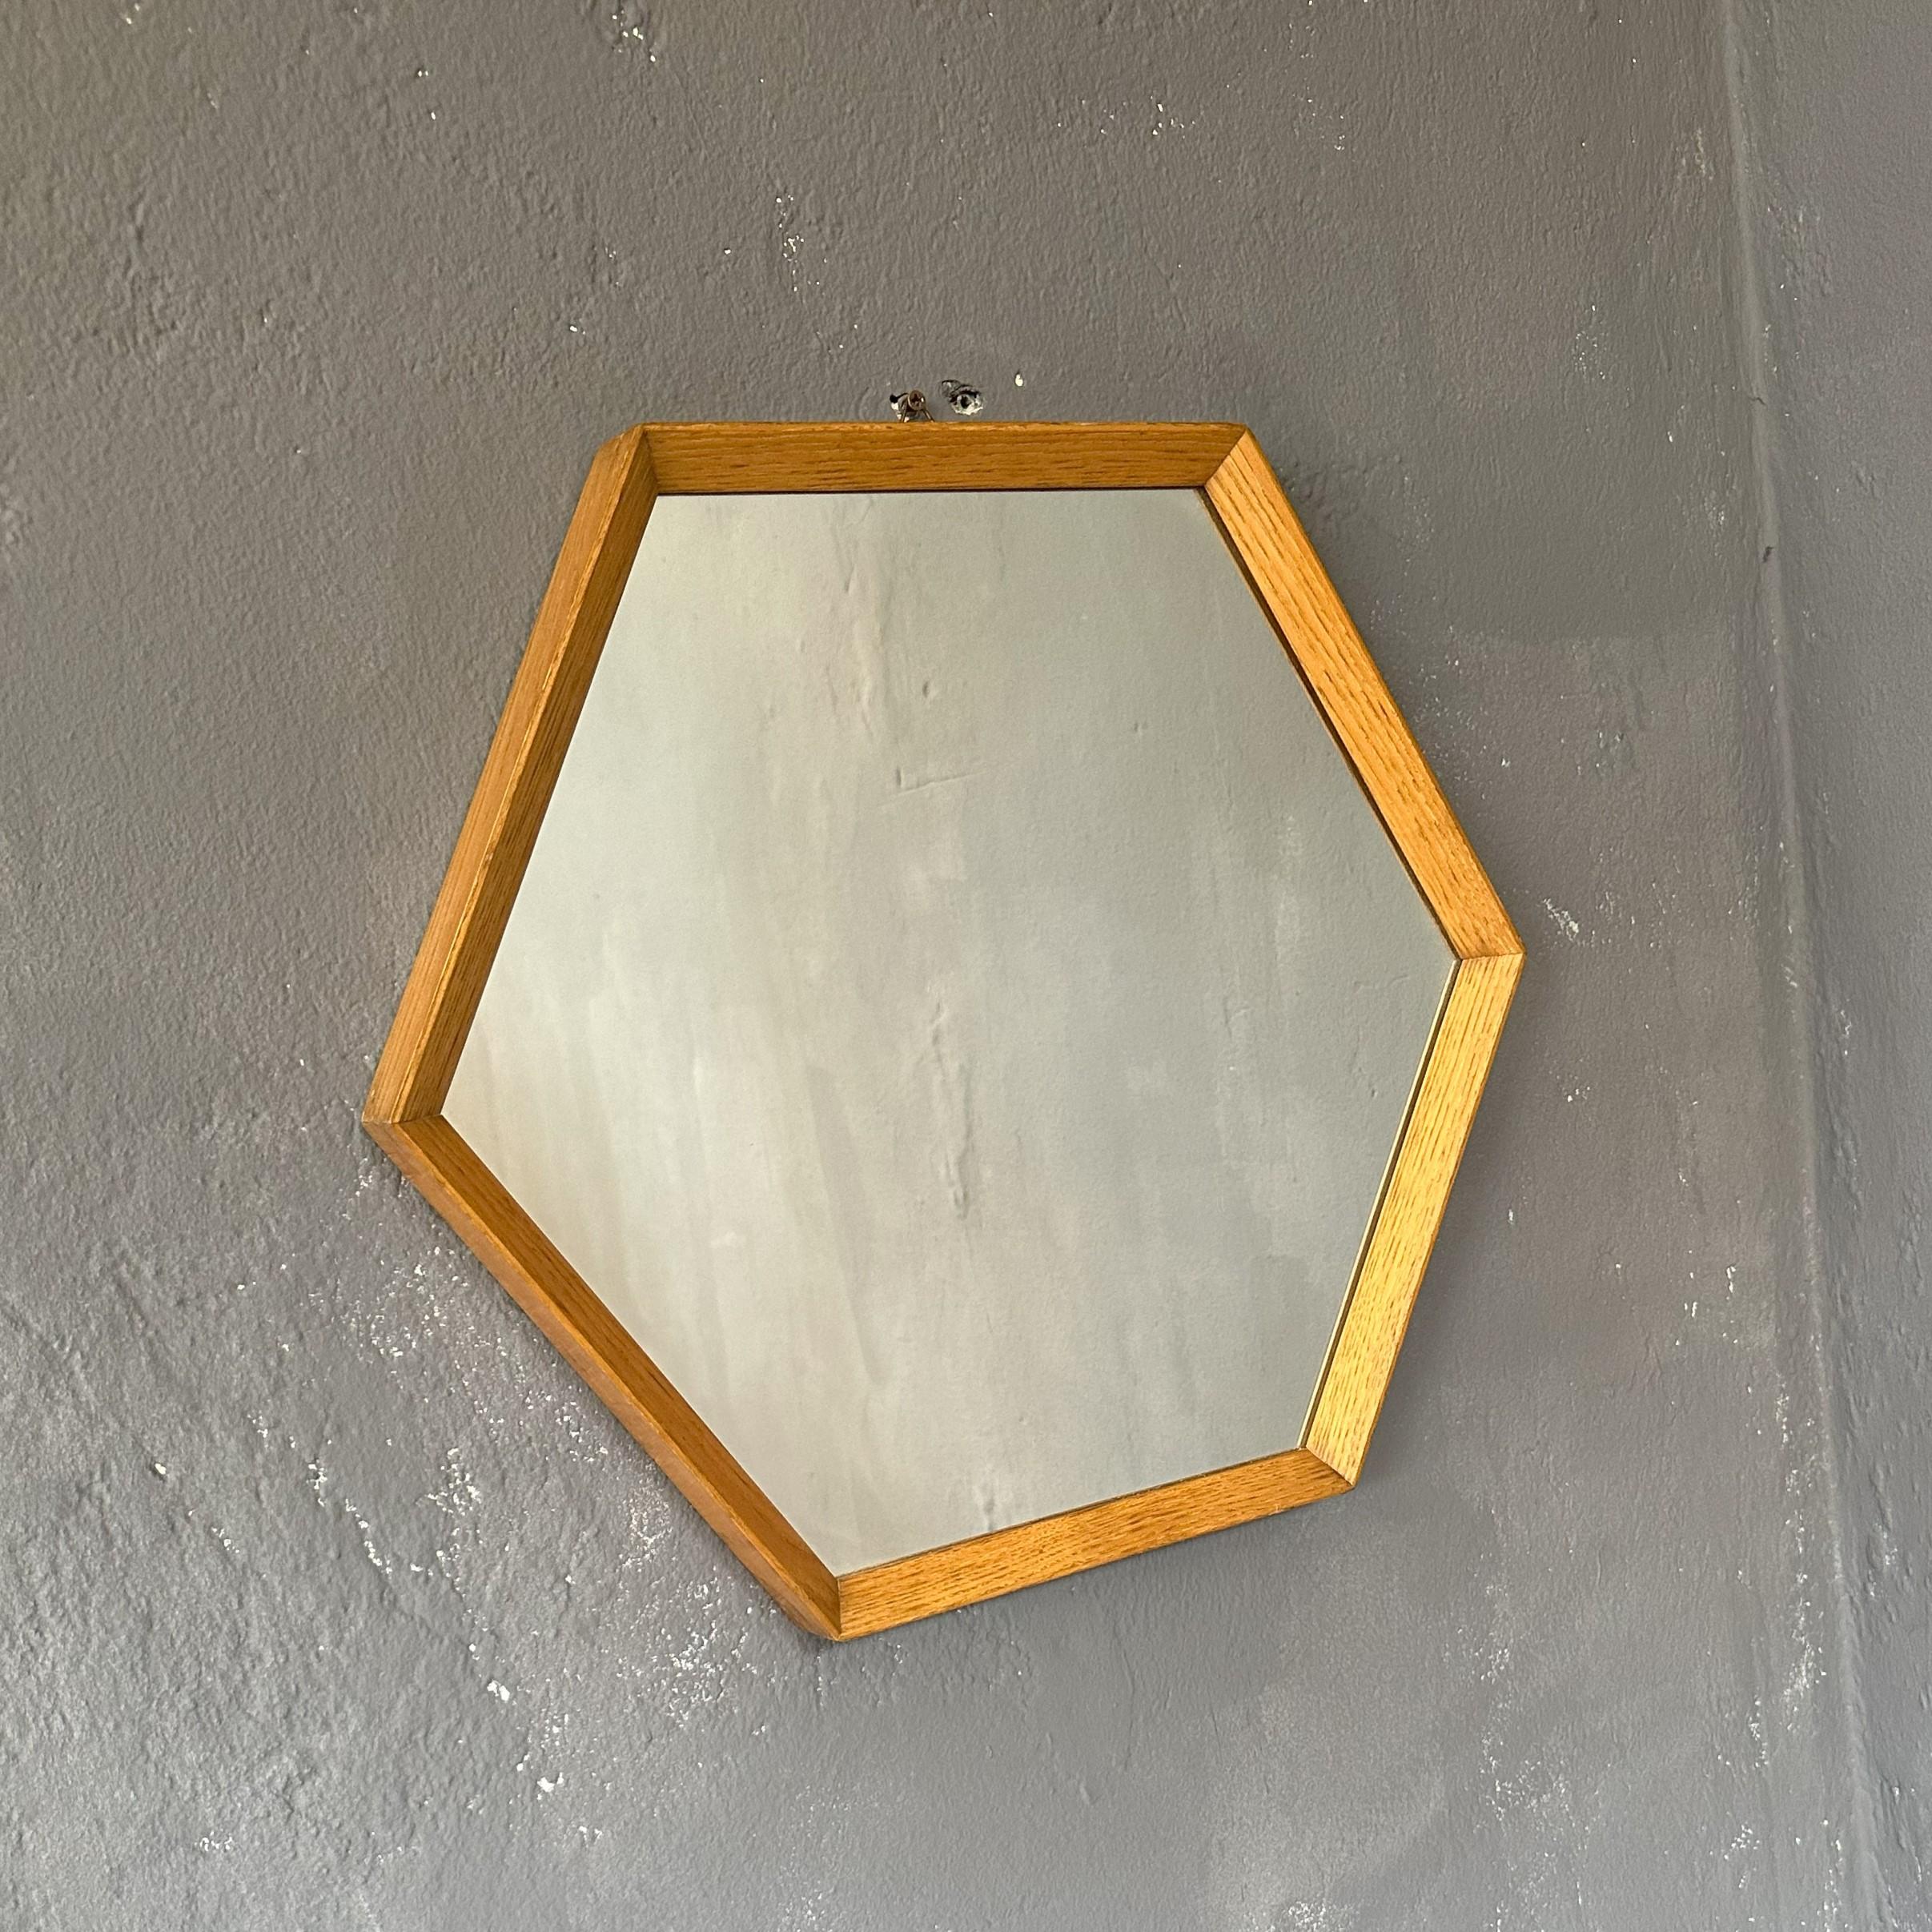 Miroir hexagonal, moderne du milieu du siècle, avec cadre en bois de chêne, années 1960, fabrication italienne.
Miroir hexagonal de 26,5 cm de côté.
Le cadre en bois de chêne, qui suit tout le contour du miroir, le rend moderne et adaptable à tout